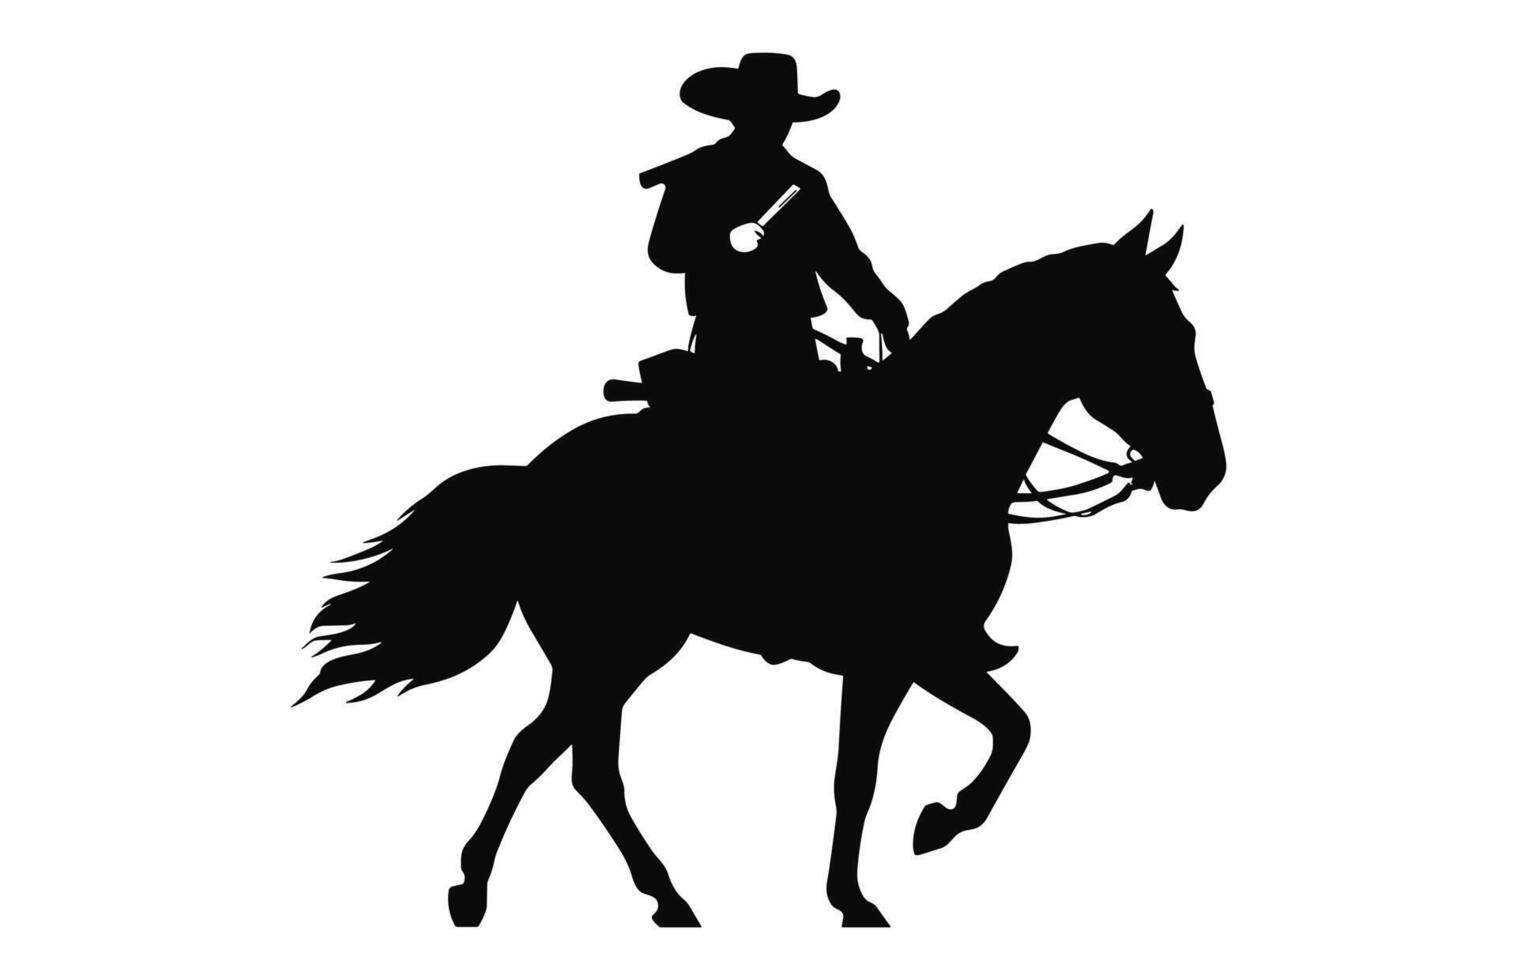 mexicain cow-boy équitation une charro cheval silhouette vecteur isolé sur une blanc arrière-plan, charro cheval noir clipart